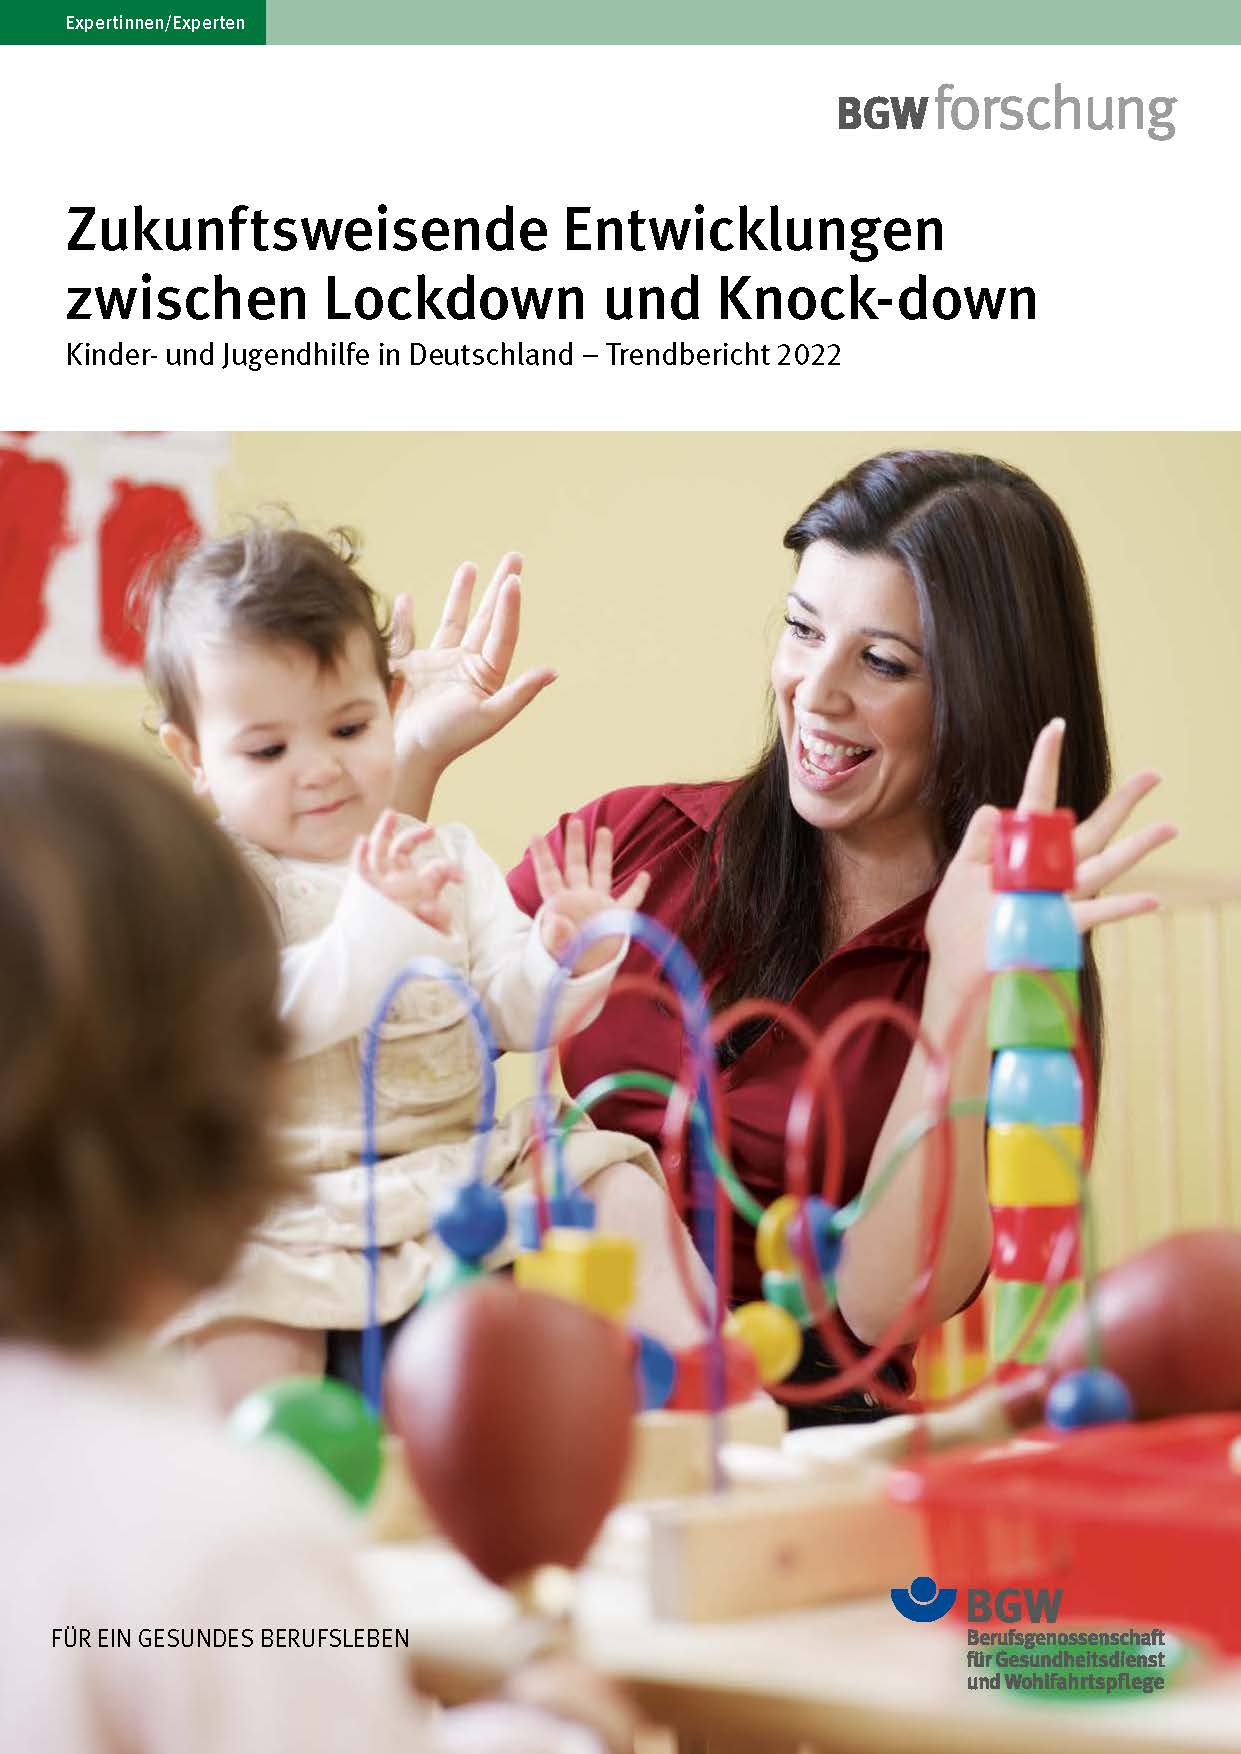 Titelbild Broschüre: Baby auf dem Schoß einer Frau - beide gestikulieren lachend - im Vordergrund Spielzeug.